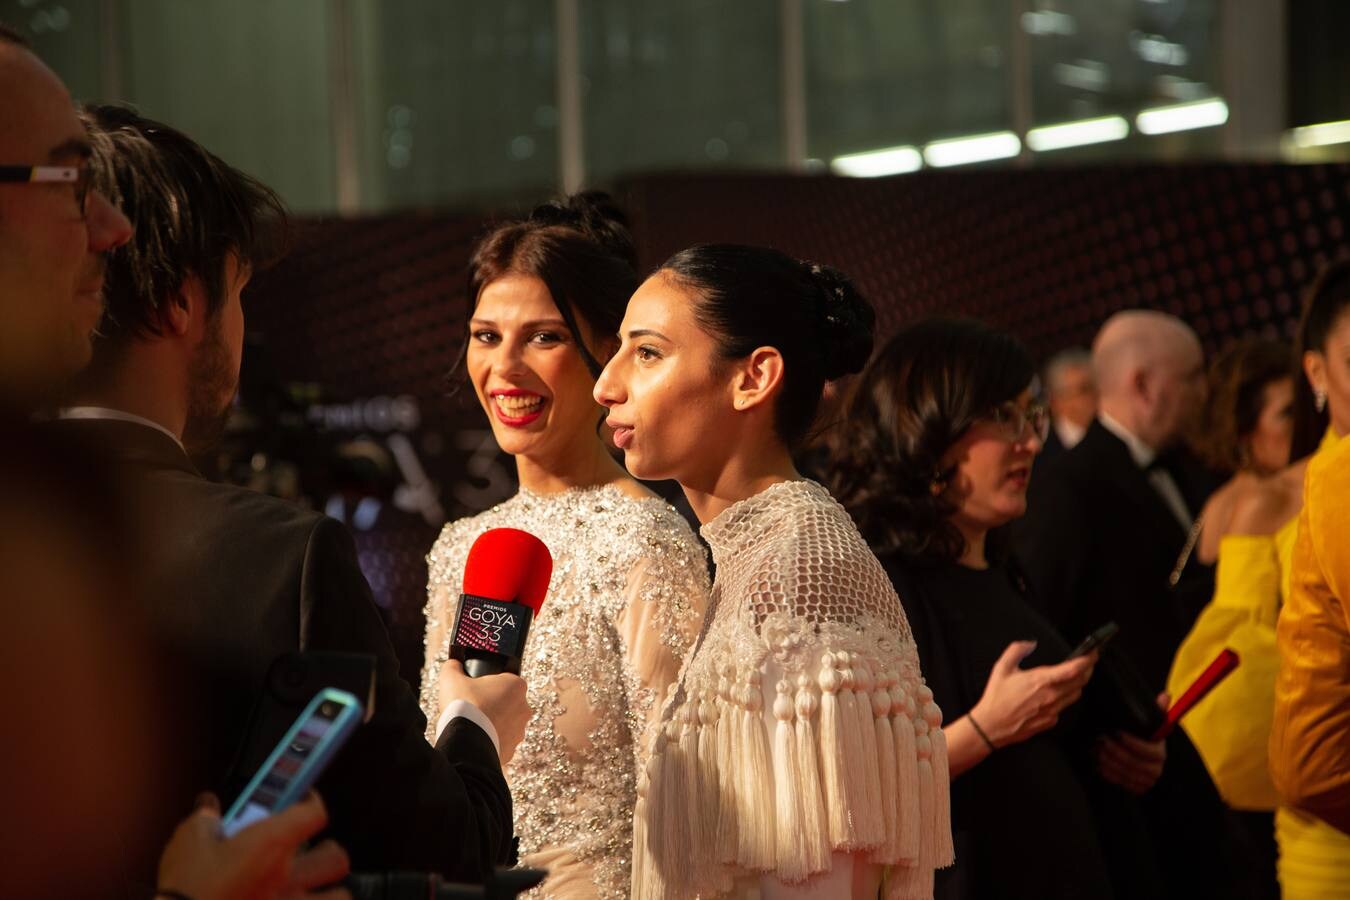 Premios Goya 2019: El cine se viste de gala en Sevilla (II)